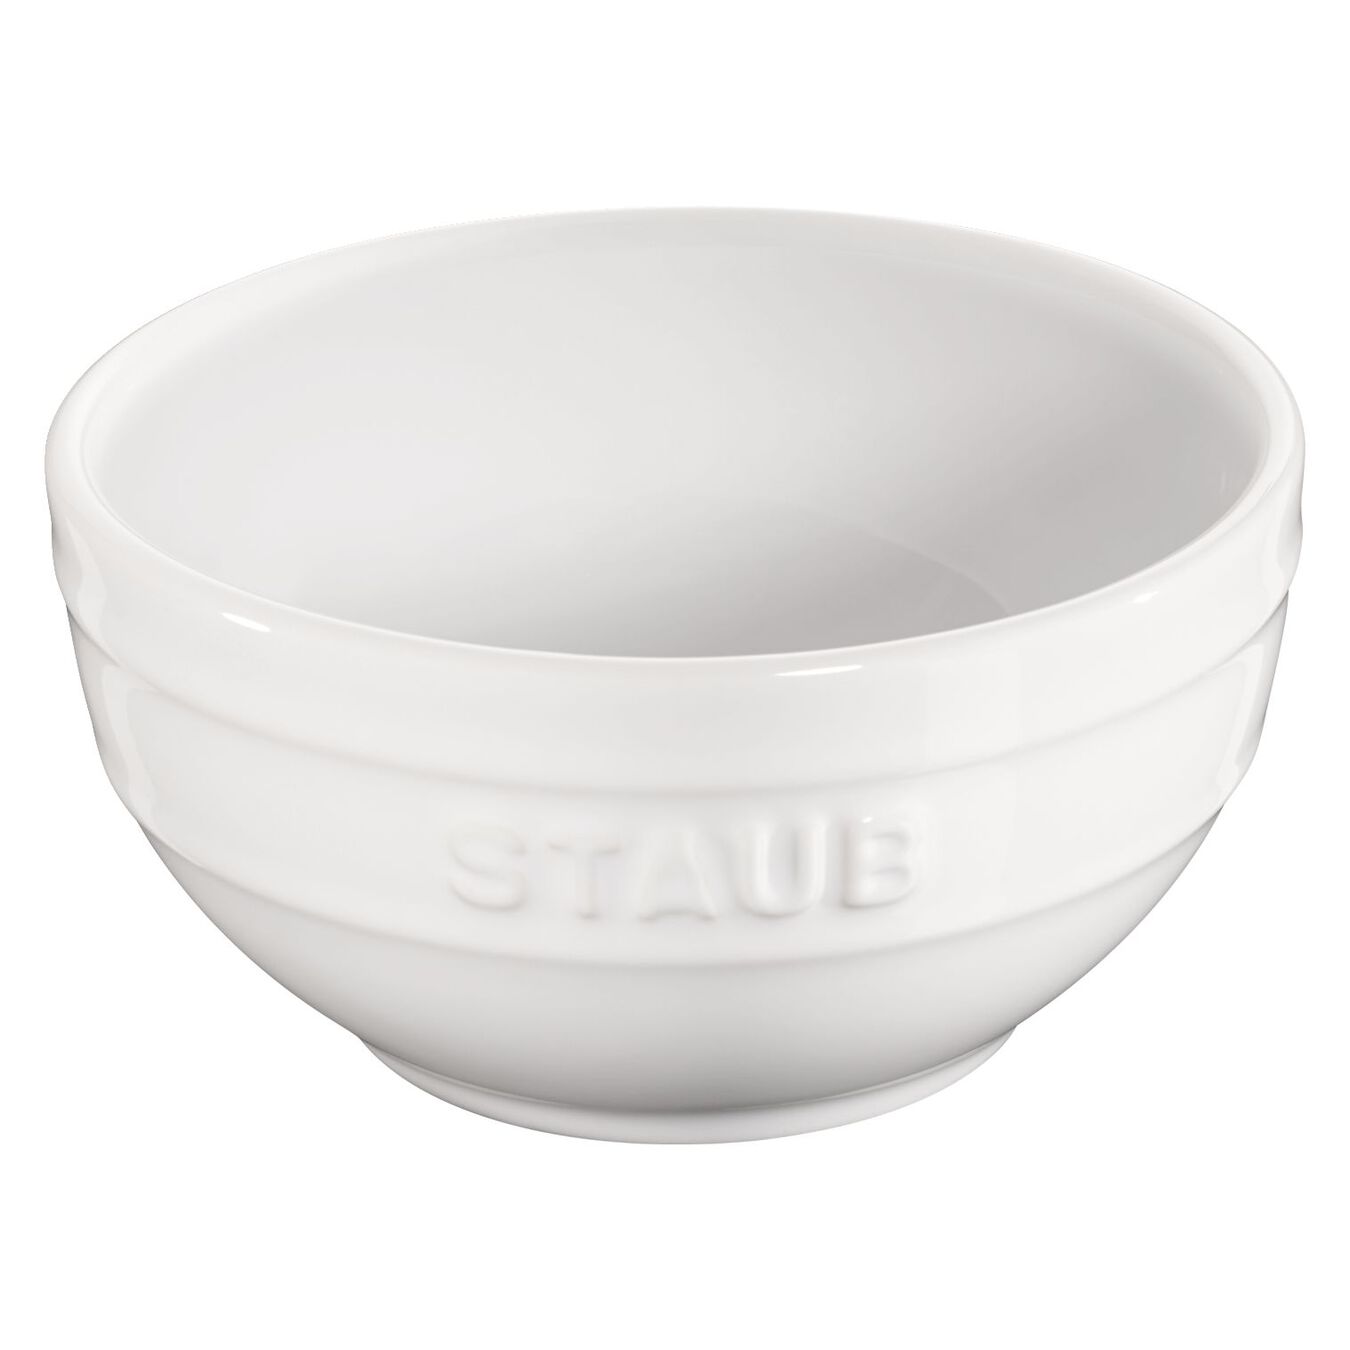 14 cm round Ceramic Bowl pure-white,,large 2